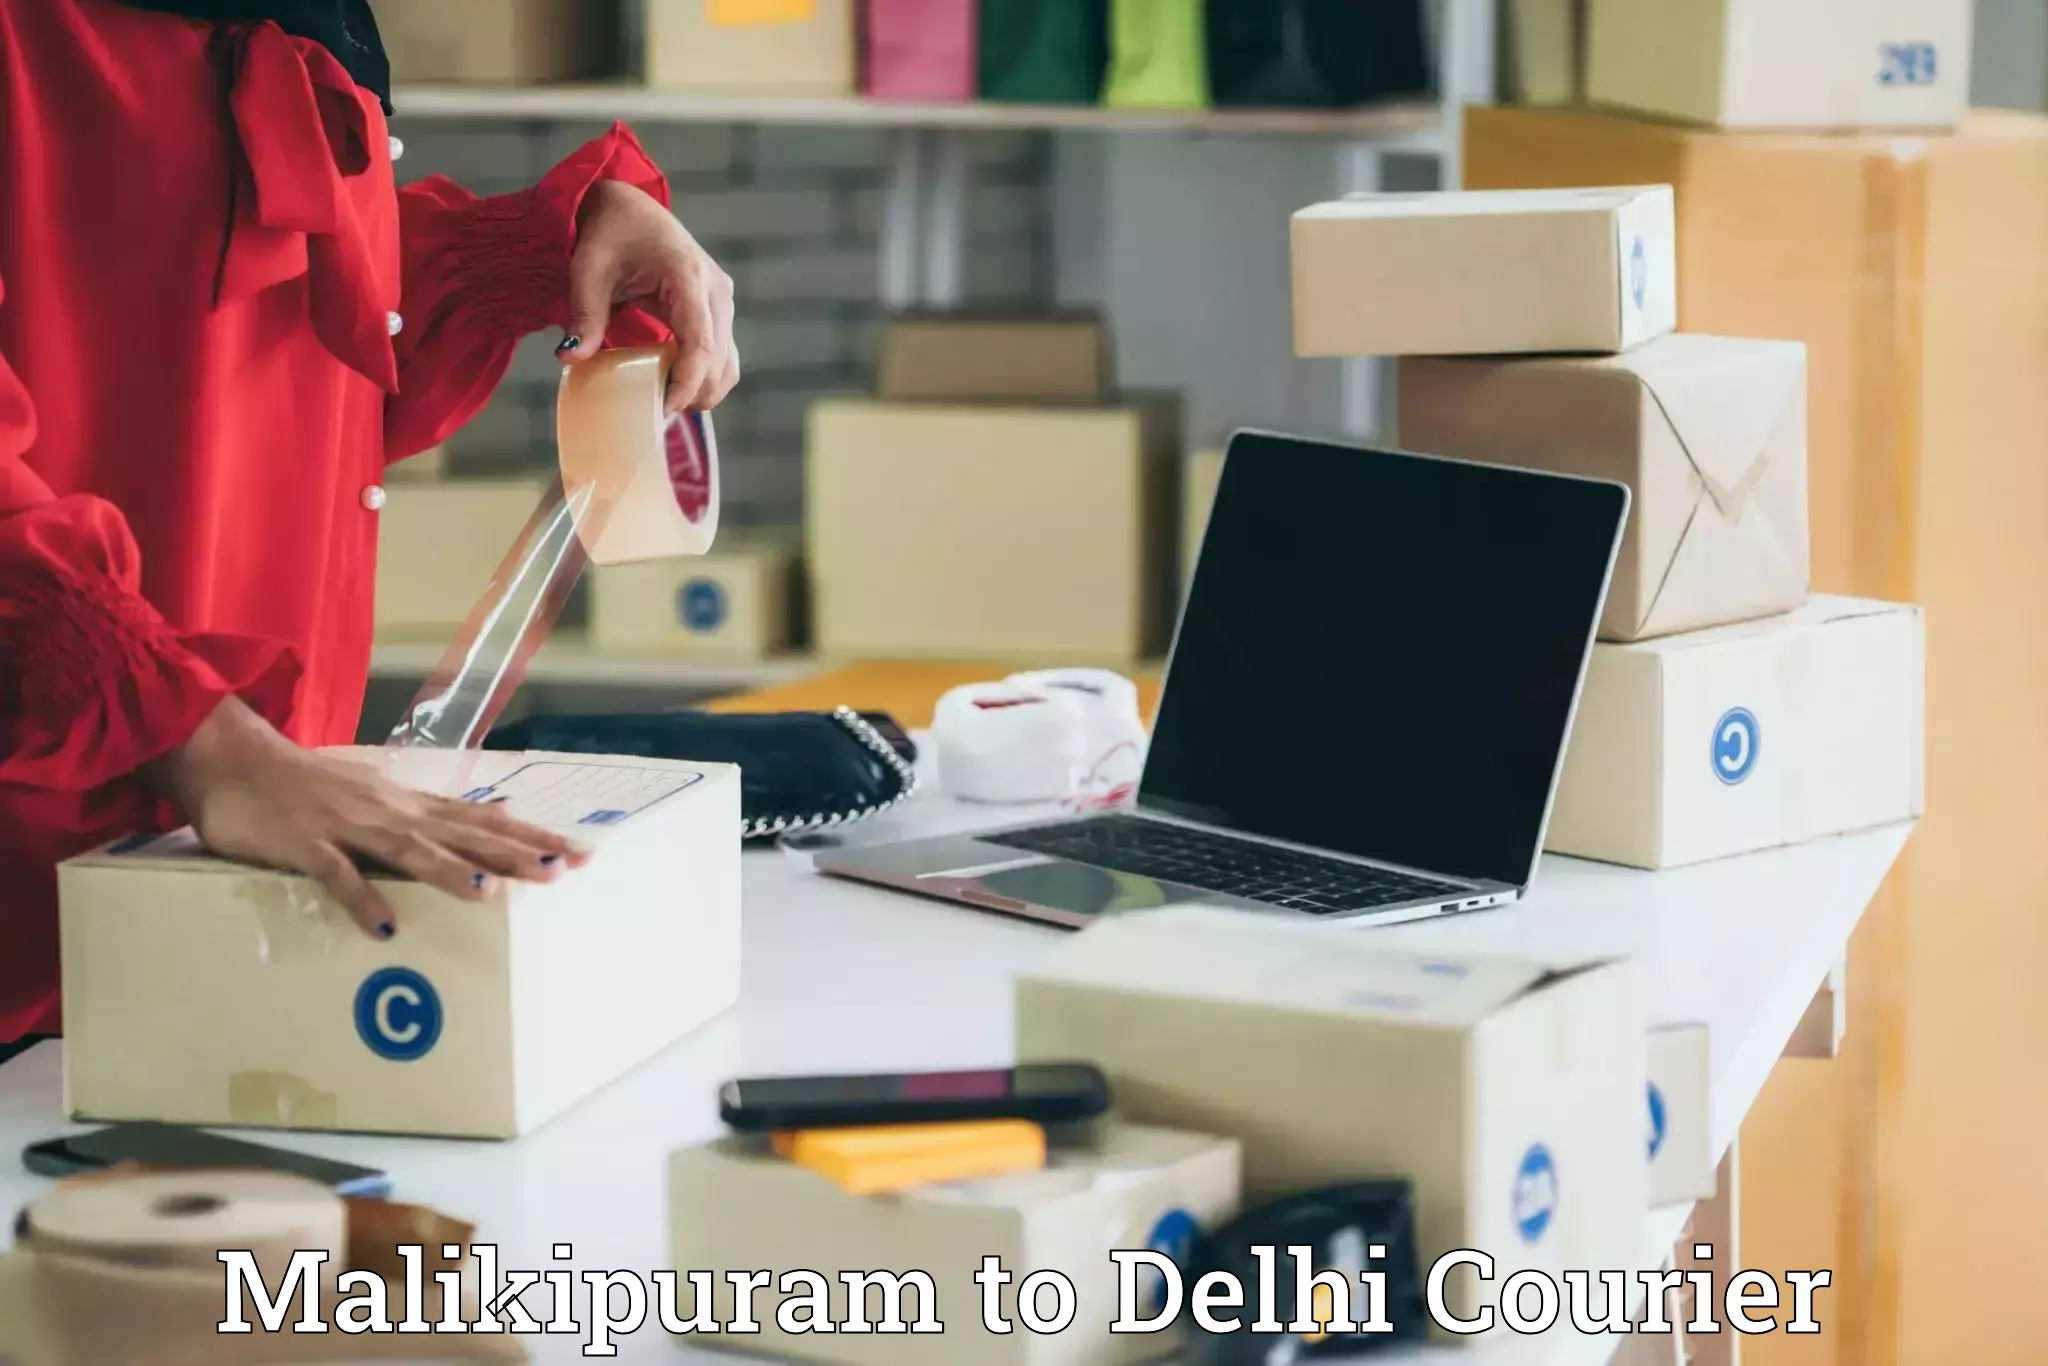 Modern courier technology Malikipuram to Delhi